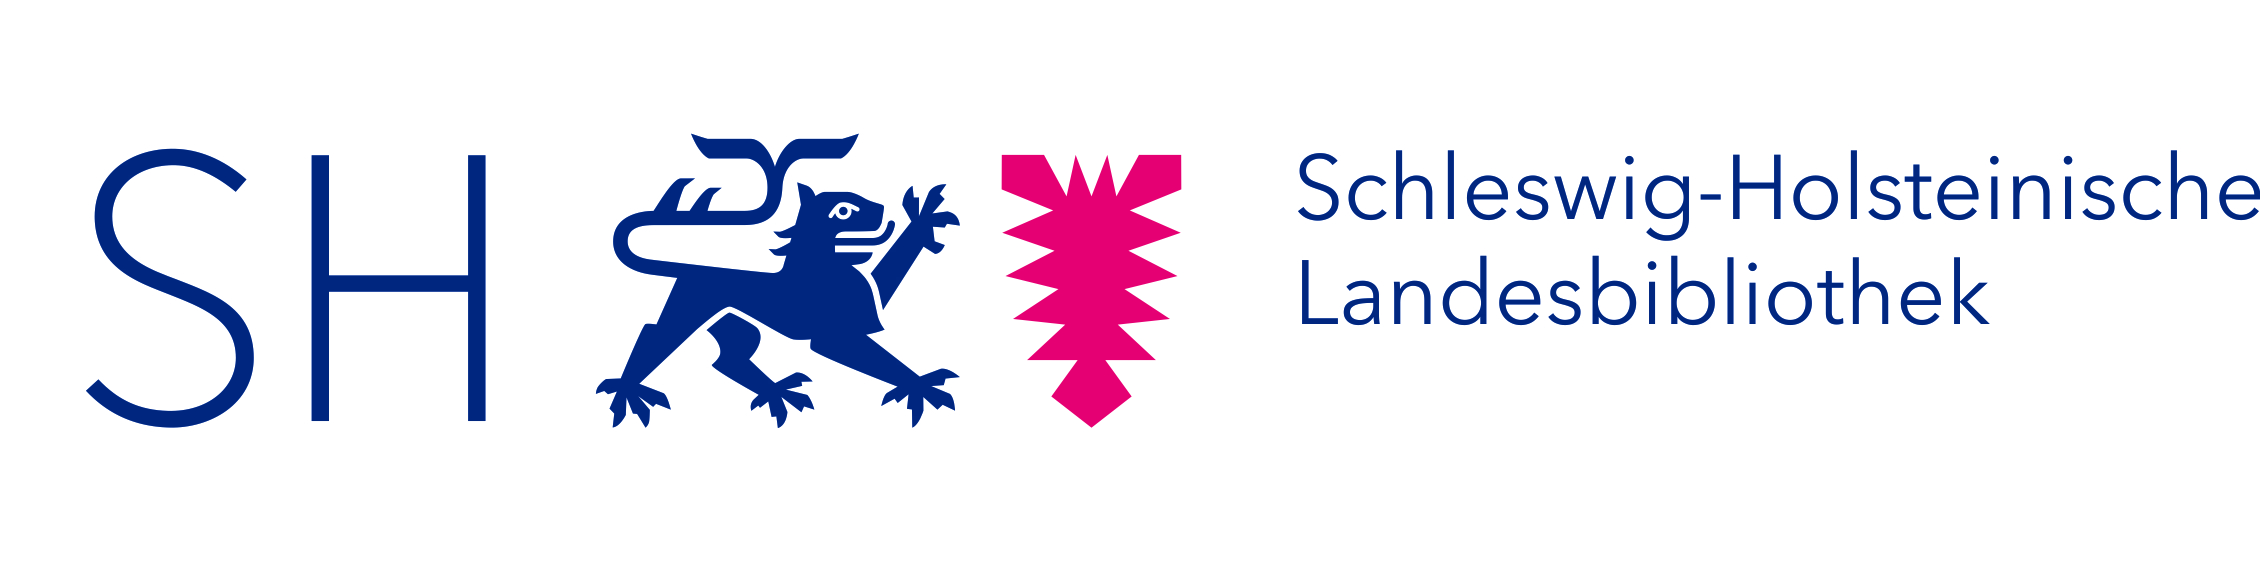 Logo Schleswig-Holsteinische Landesbibliothek.